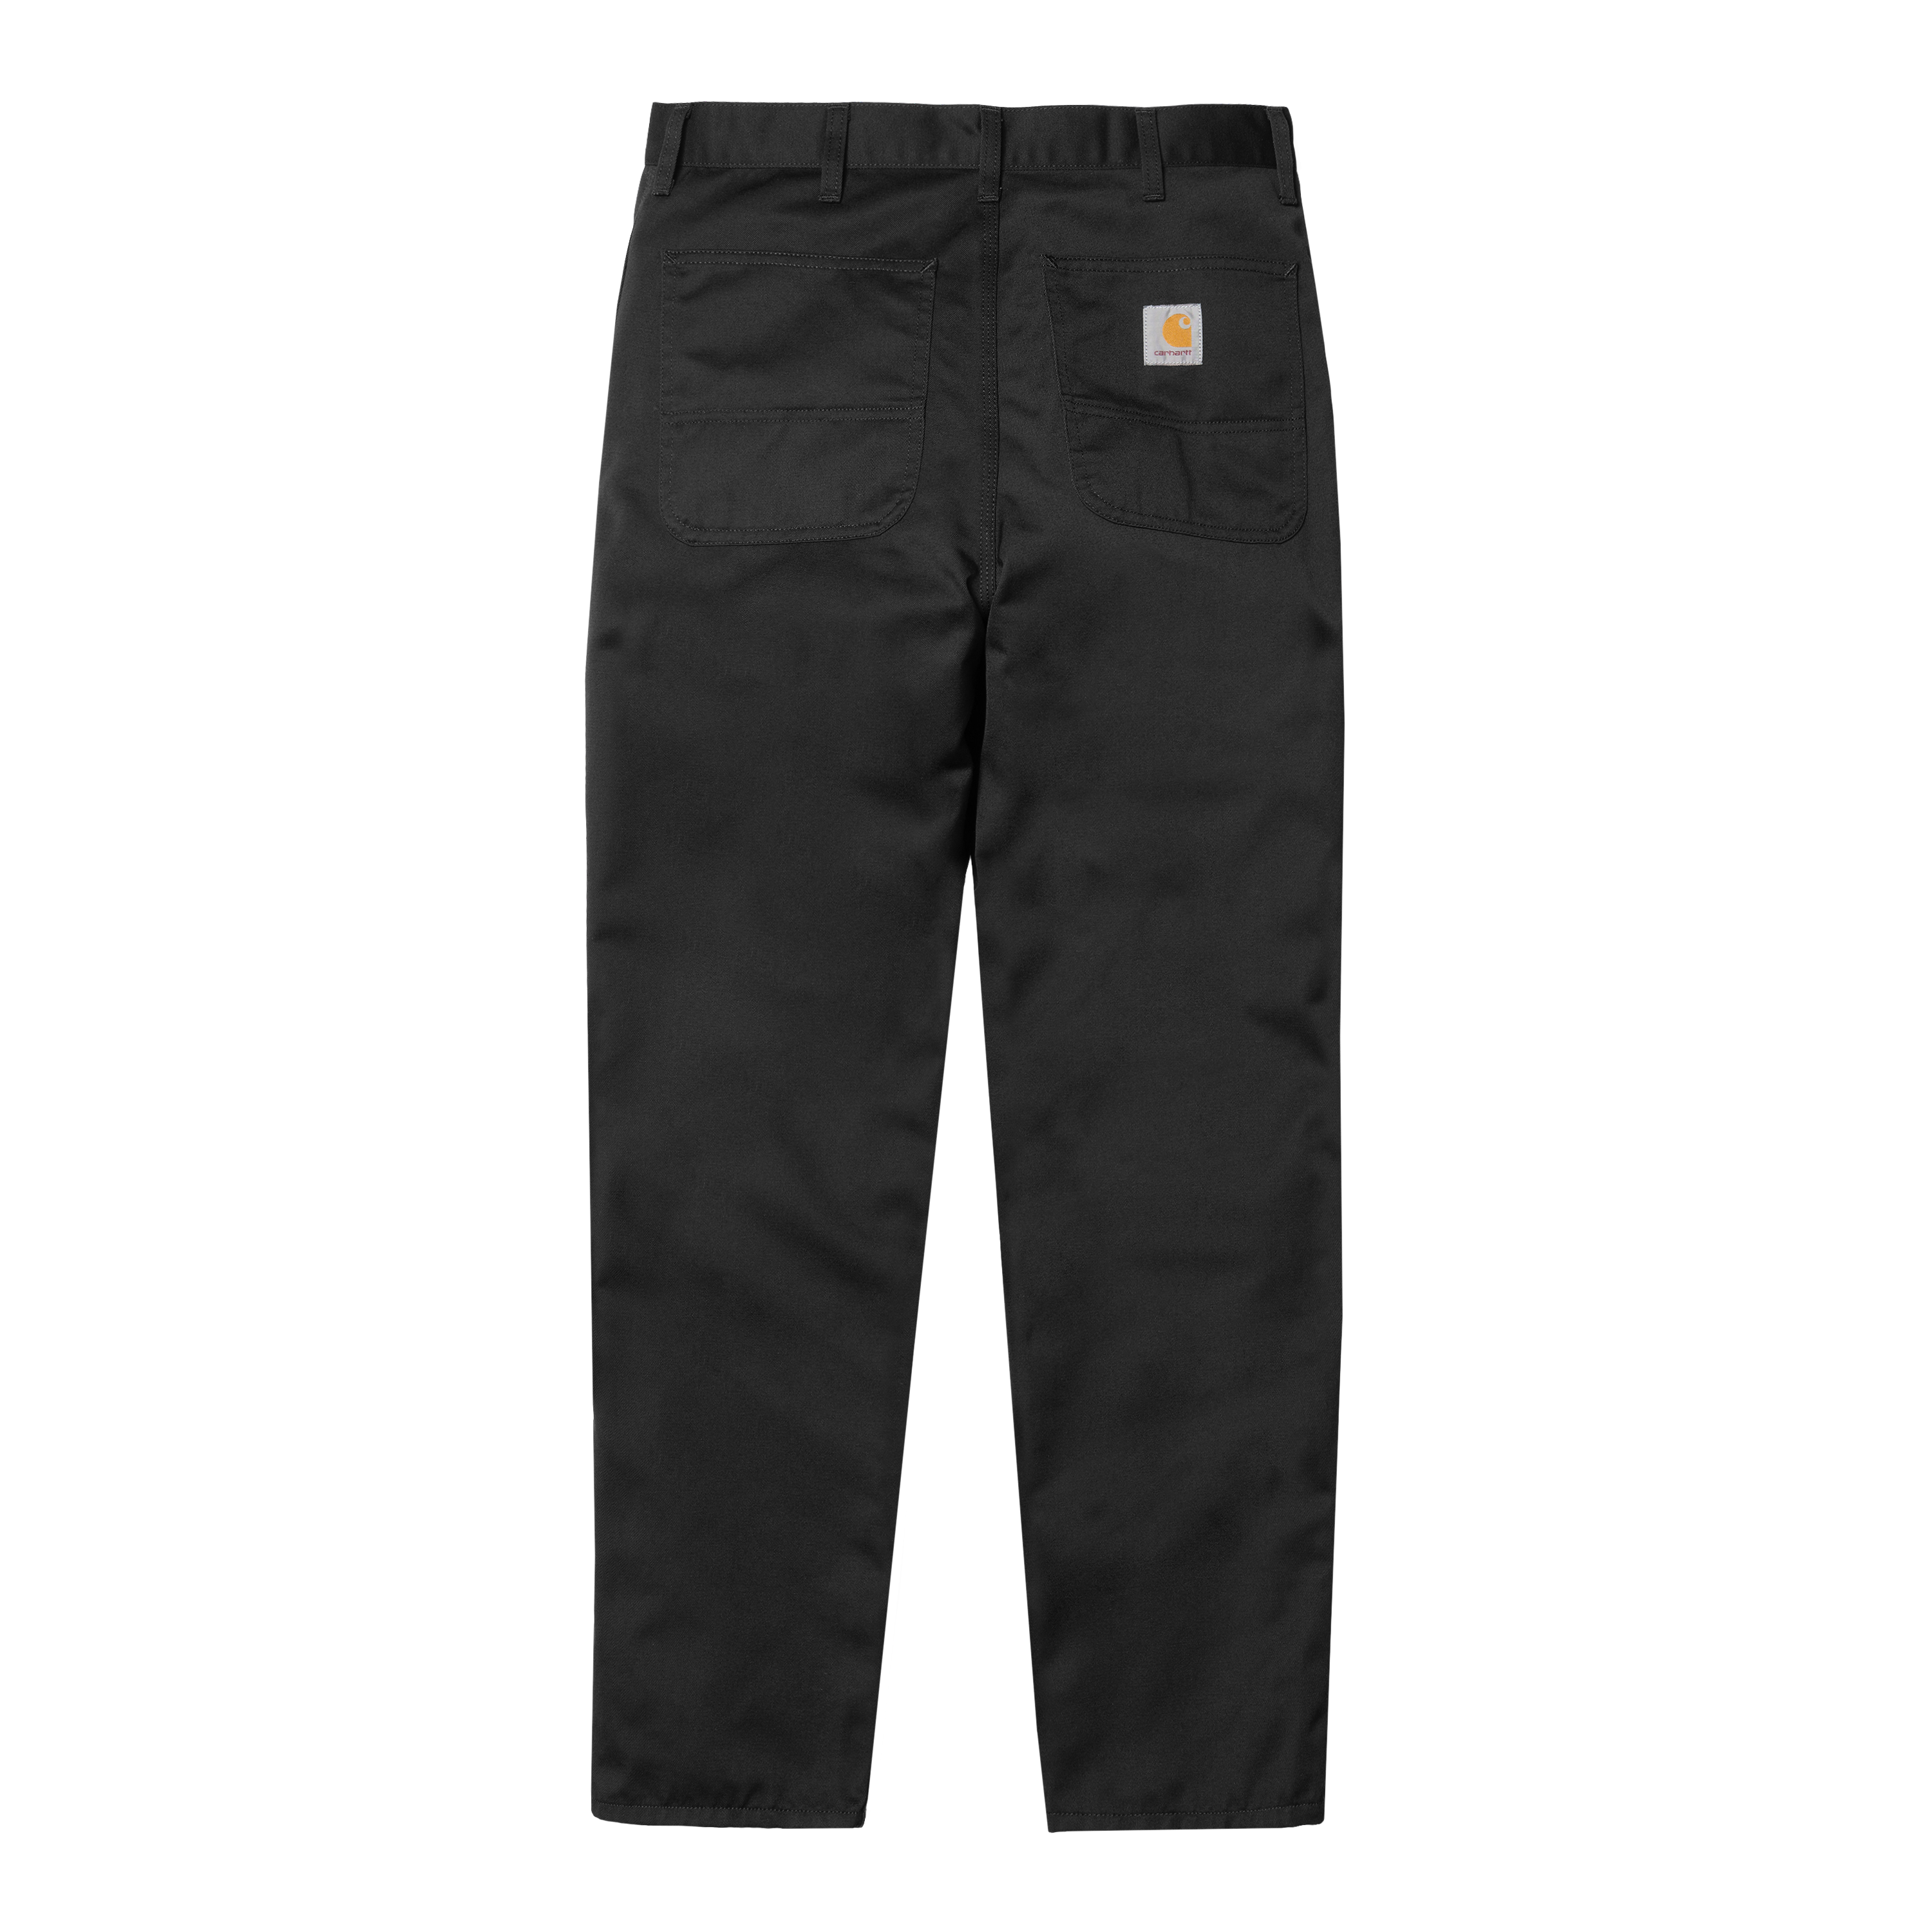 Carhartt WIP Simple Pant in Black